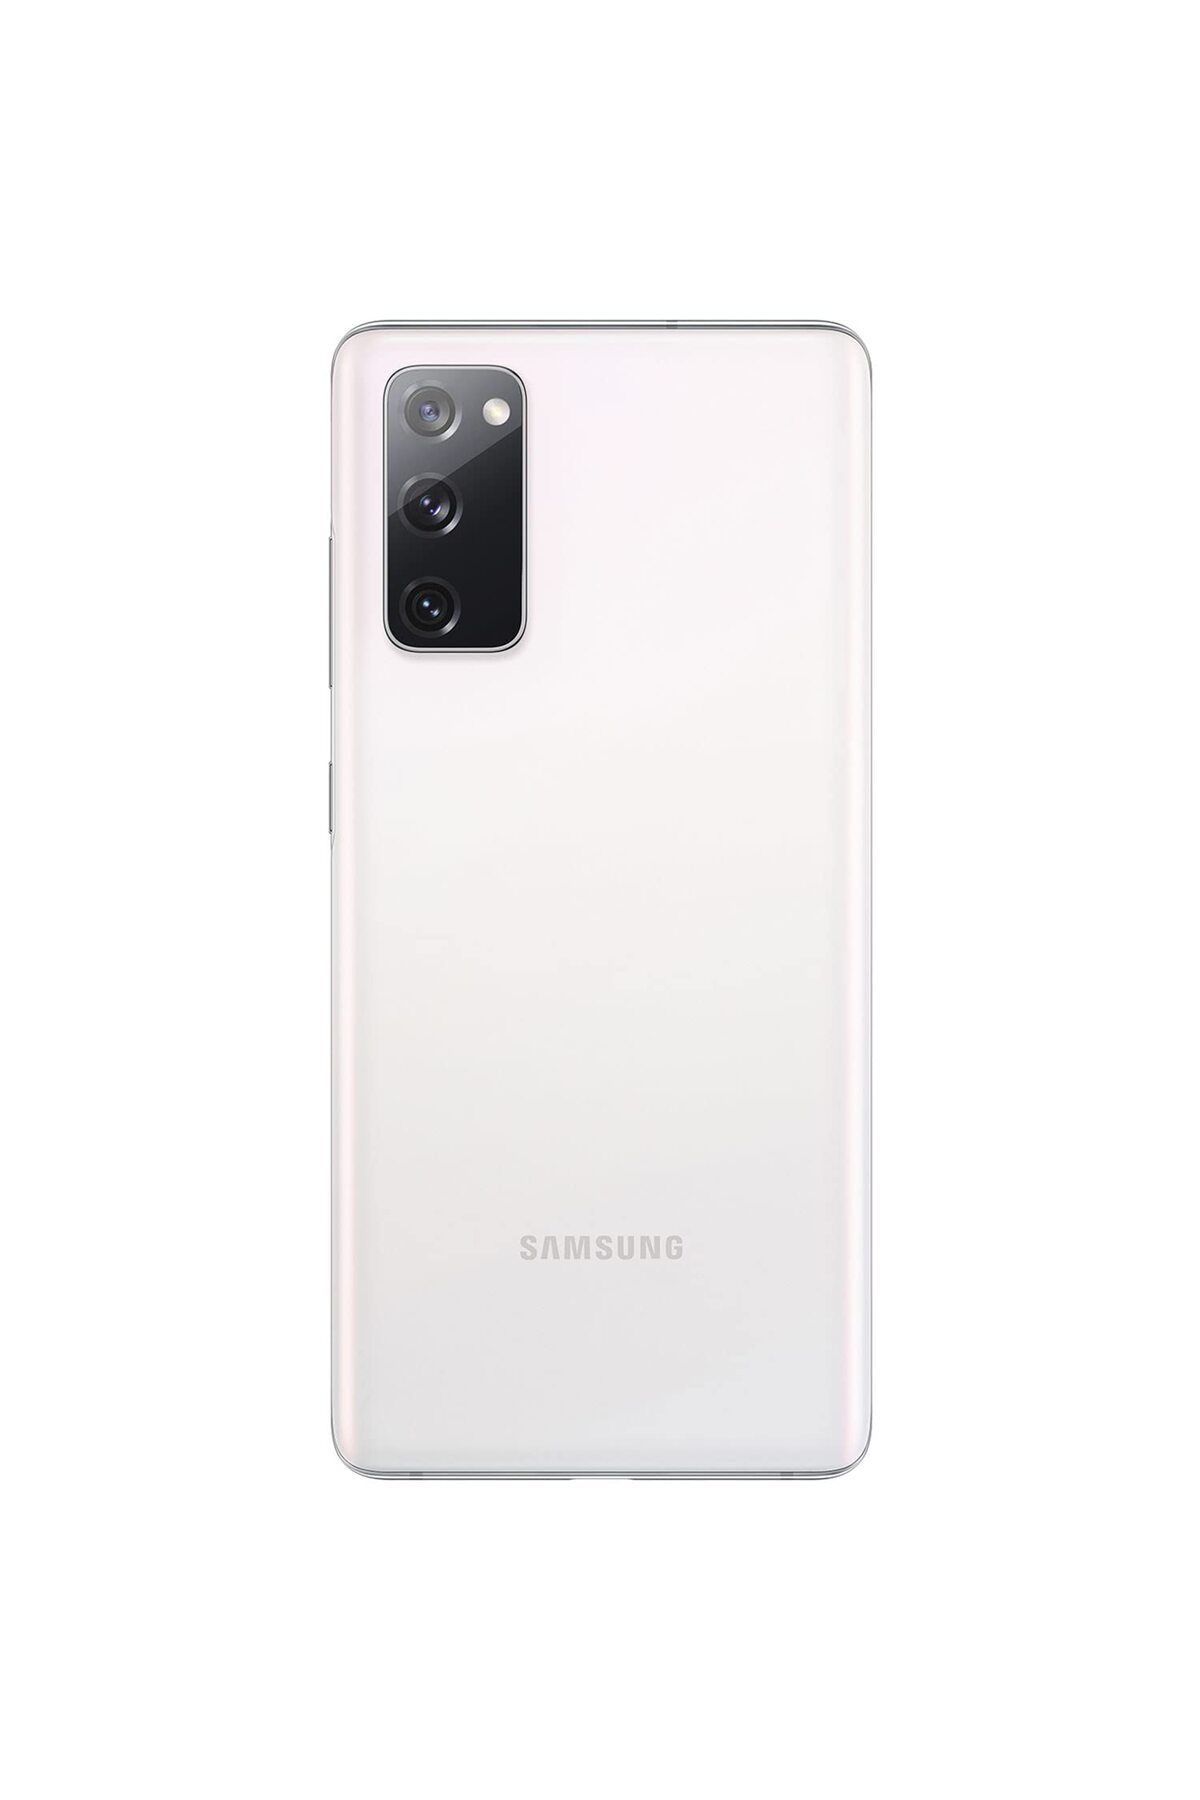 Samsung Yenilenmiş Samsung Galaxy S20 FE 128GB Beyaz B Kalite